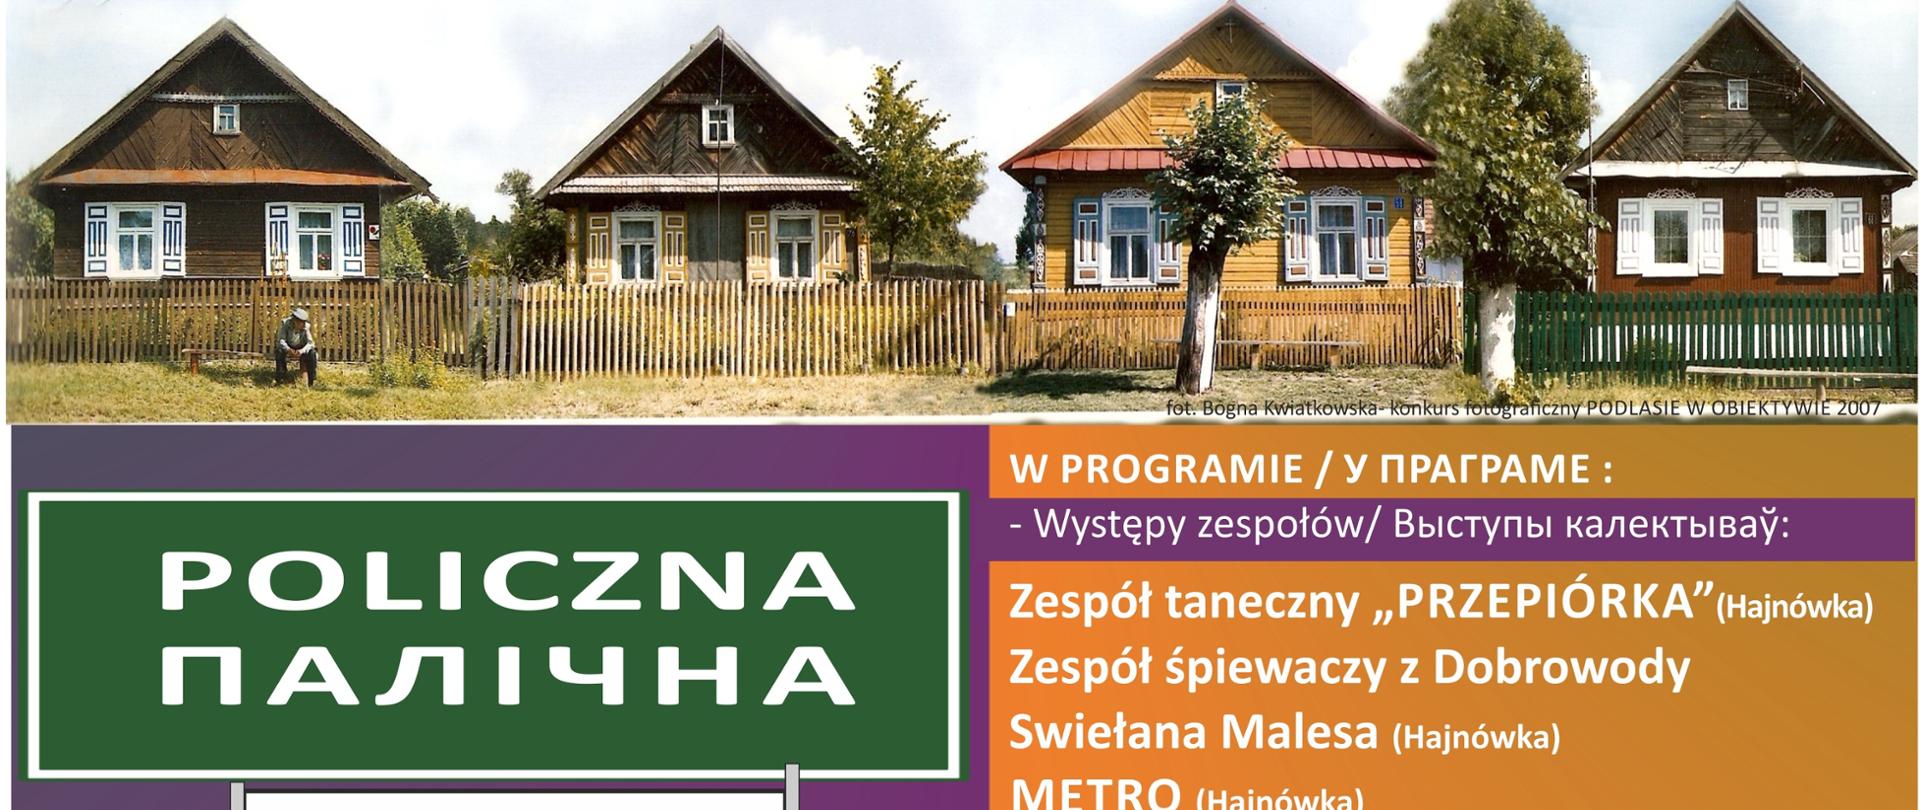 Na zielono - fioletowym tle napisy organizacyjne (zawarte w artykule) oraz zdjęcie drewnianych domów